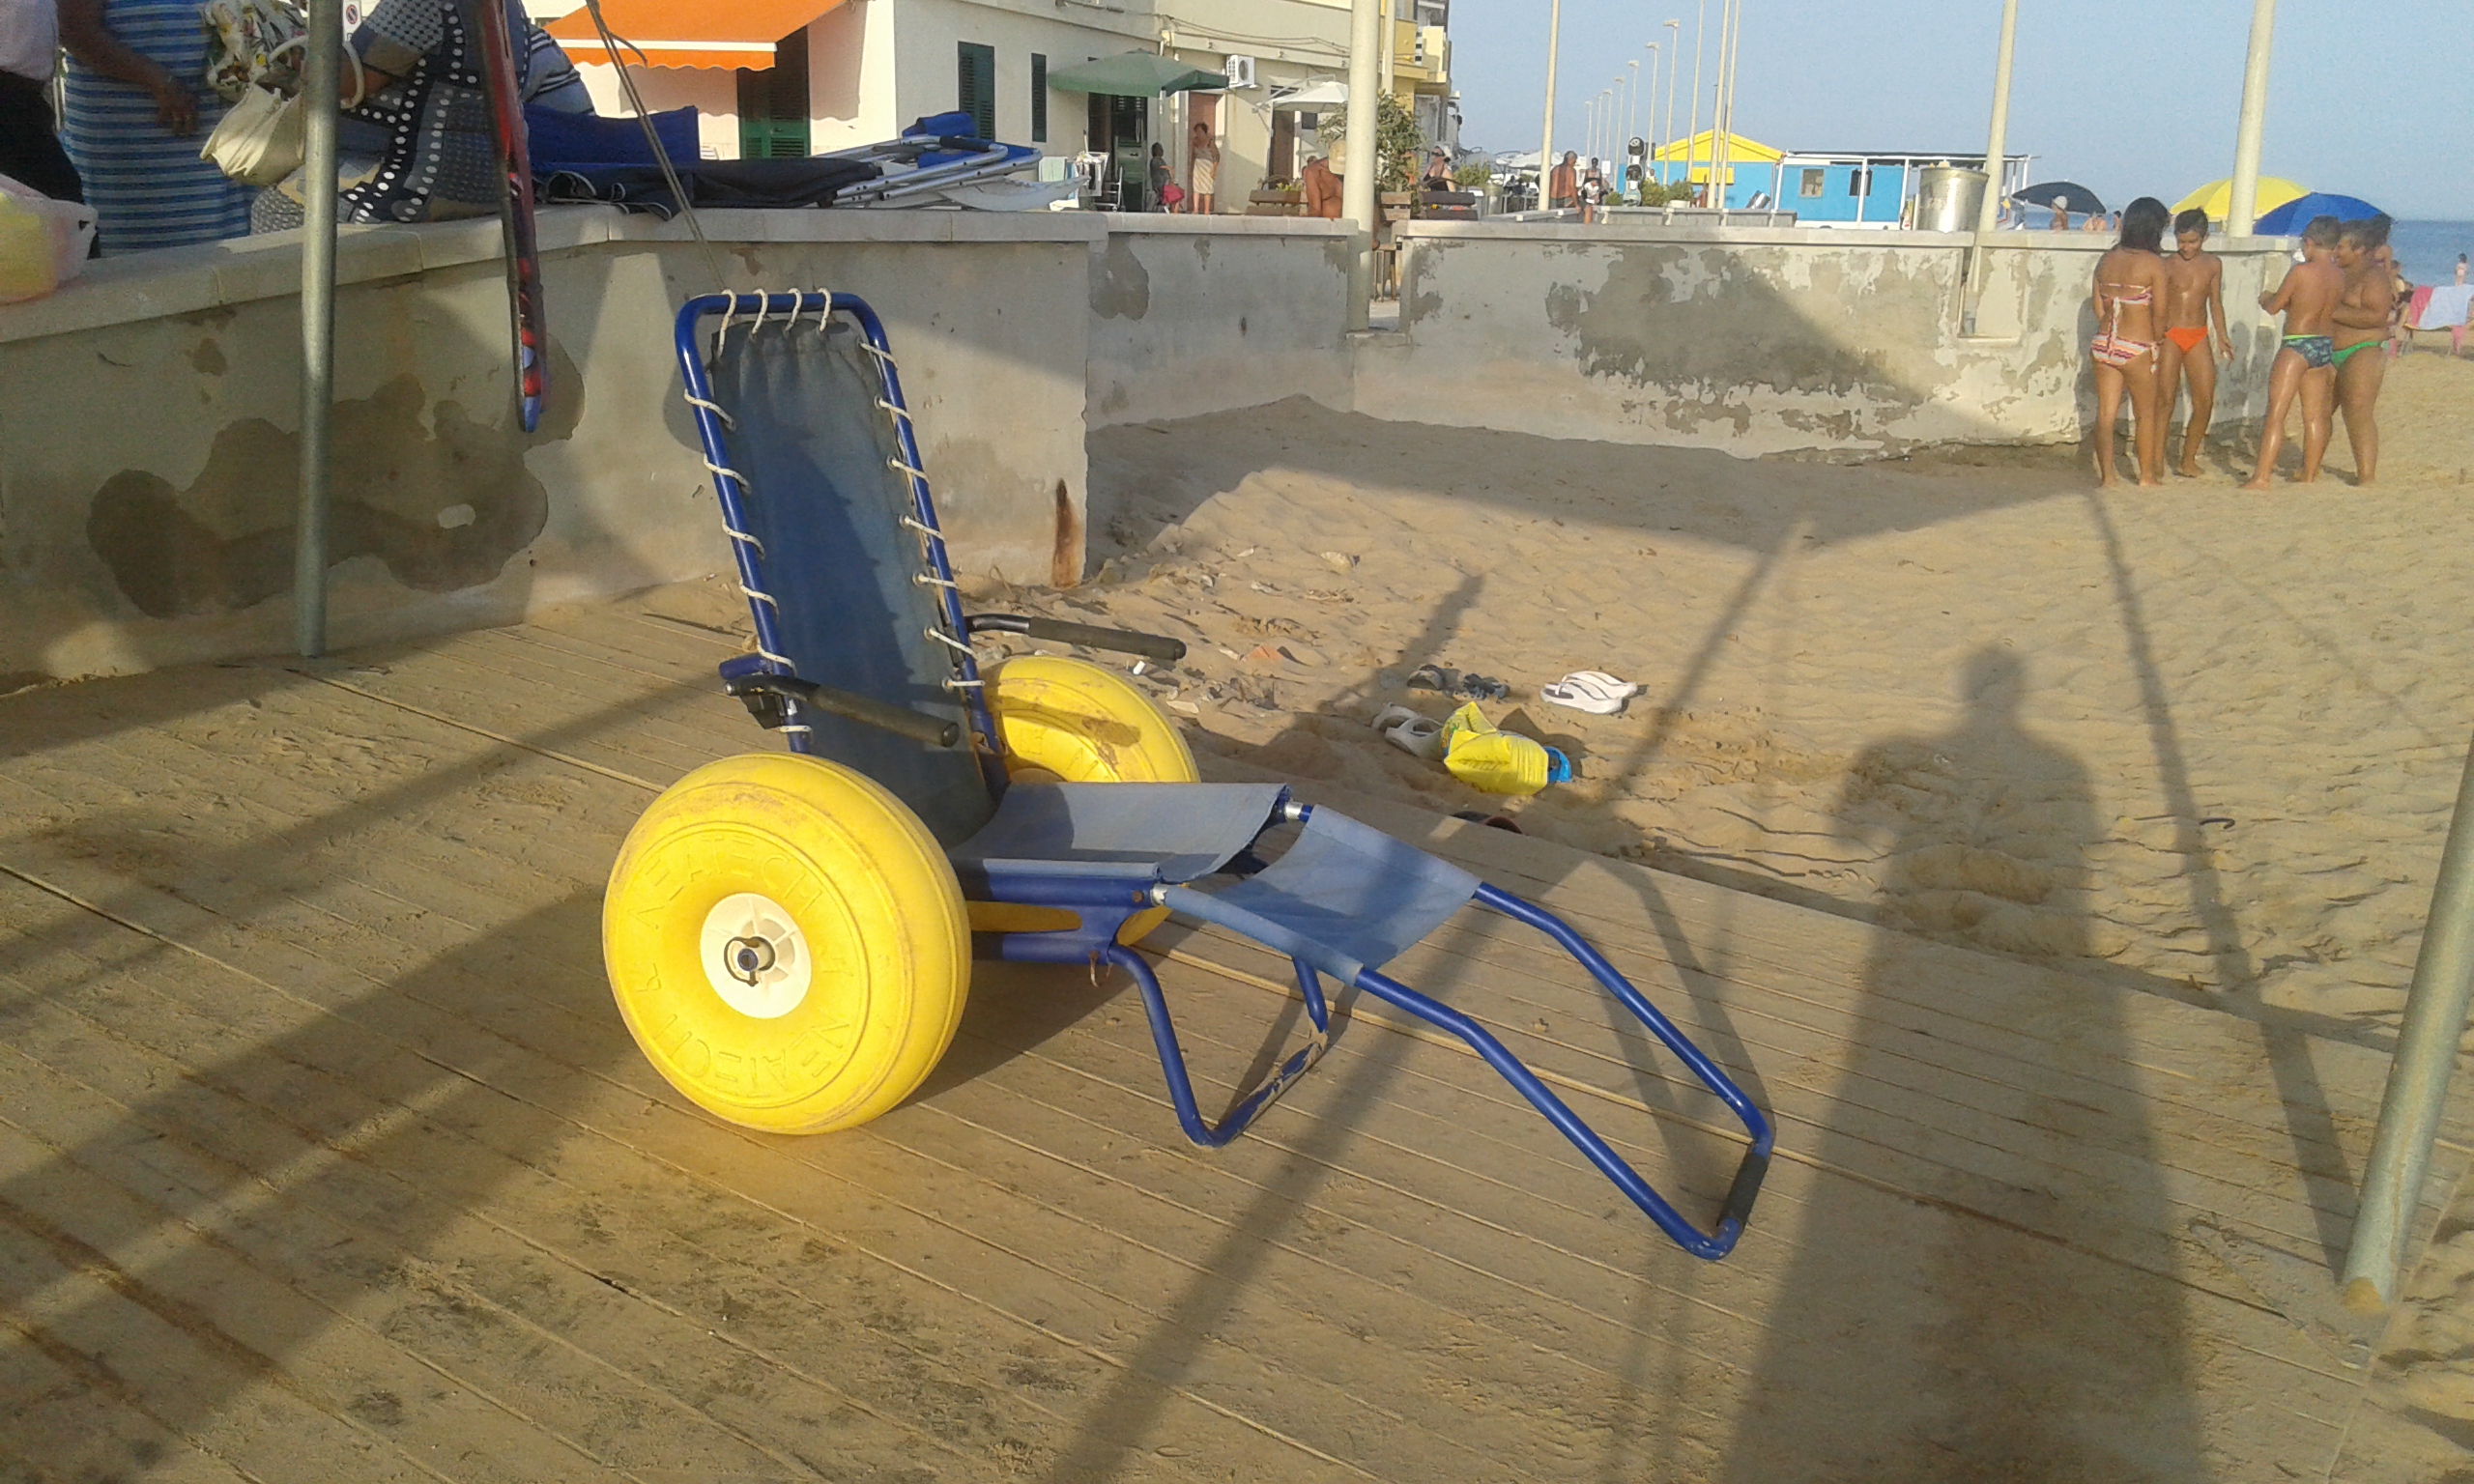  P.Secca, la sedia J.O.B. ricompare nella spiaggia antistante piazza Faro: la foto pubblicata dal comune